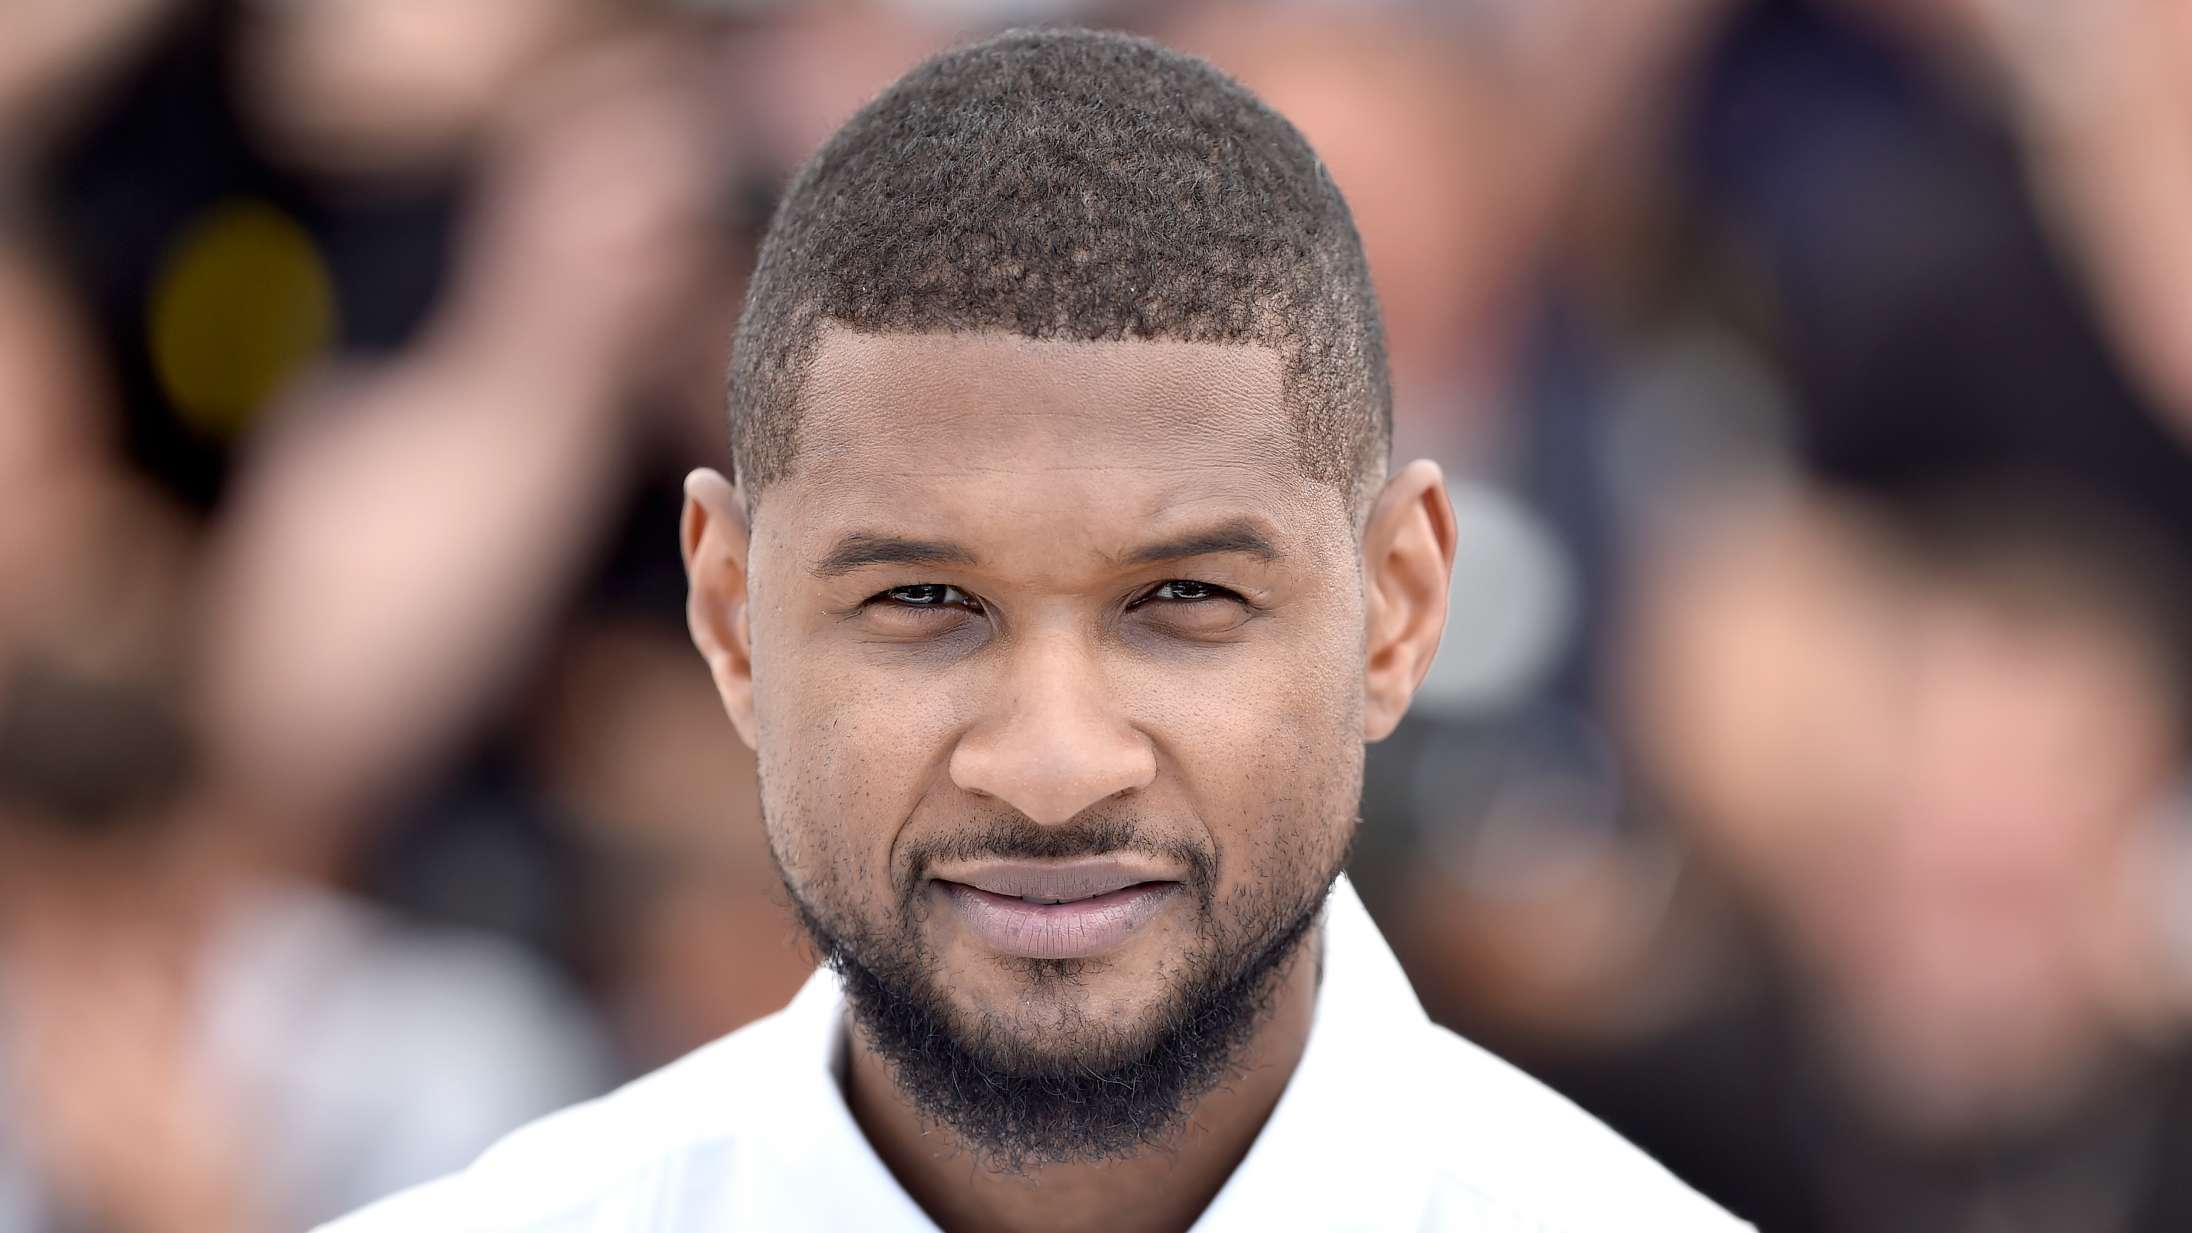 Usher var vidne til sex og orgier som 13-årig, da han boede hos Diddy, fortæller sangeren i genopdaget interview